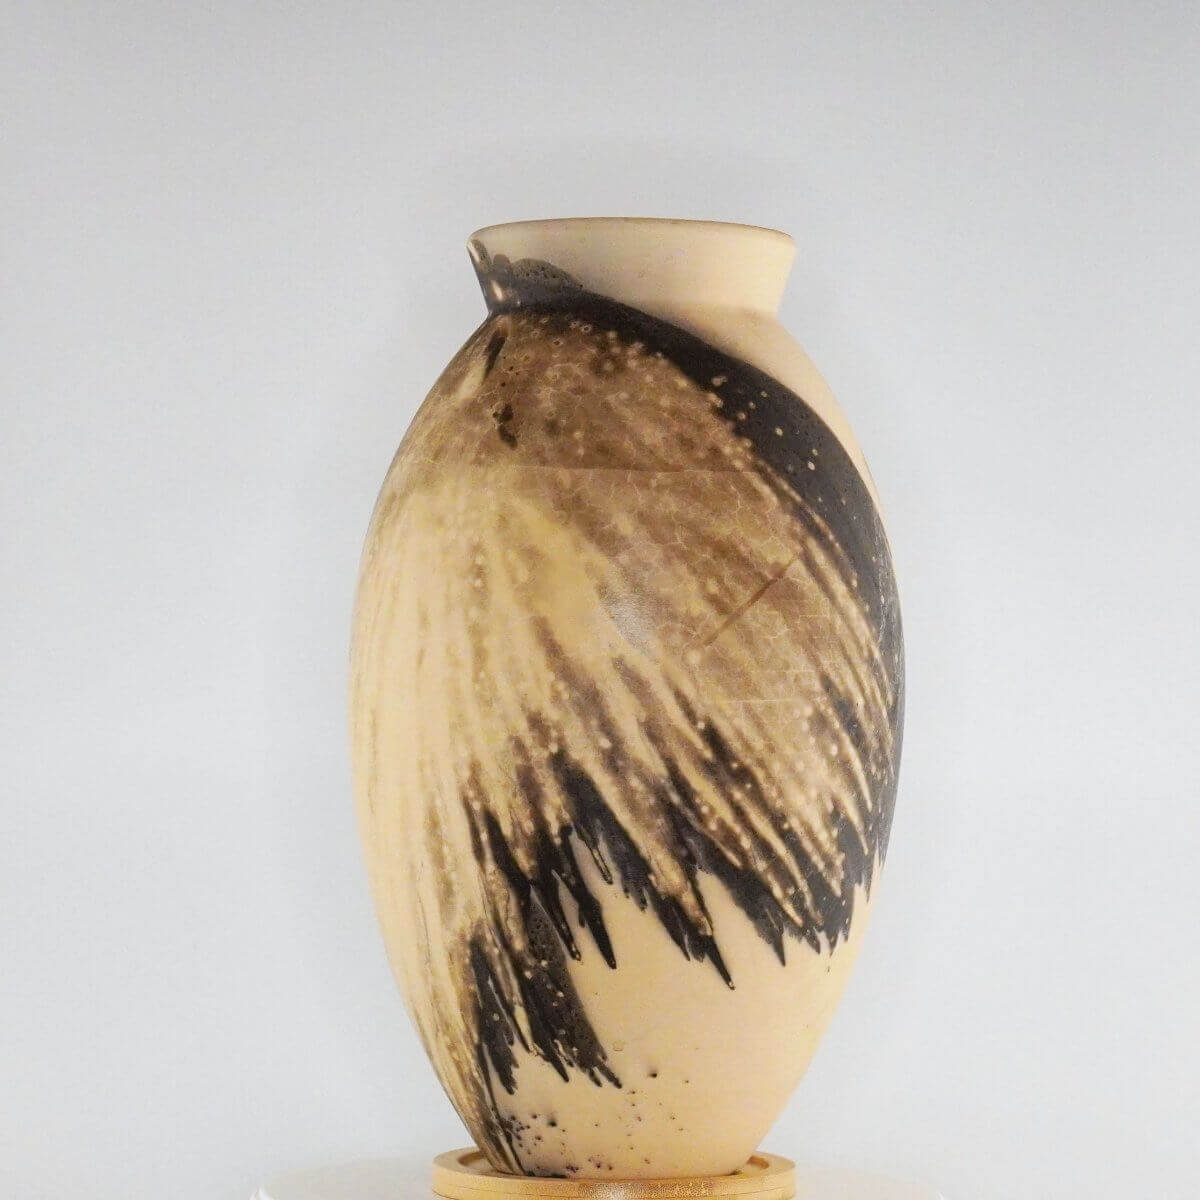 Raku pottery vase ceramic home decor RAAQUU Large Oval Ceramic Vase Obvara S/N0000363 13.5" Raku Pottery